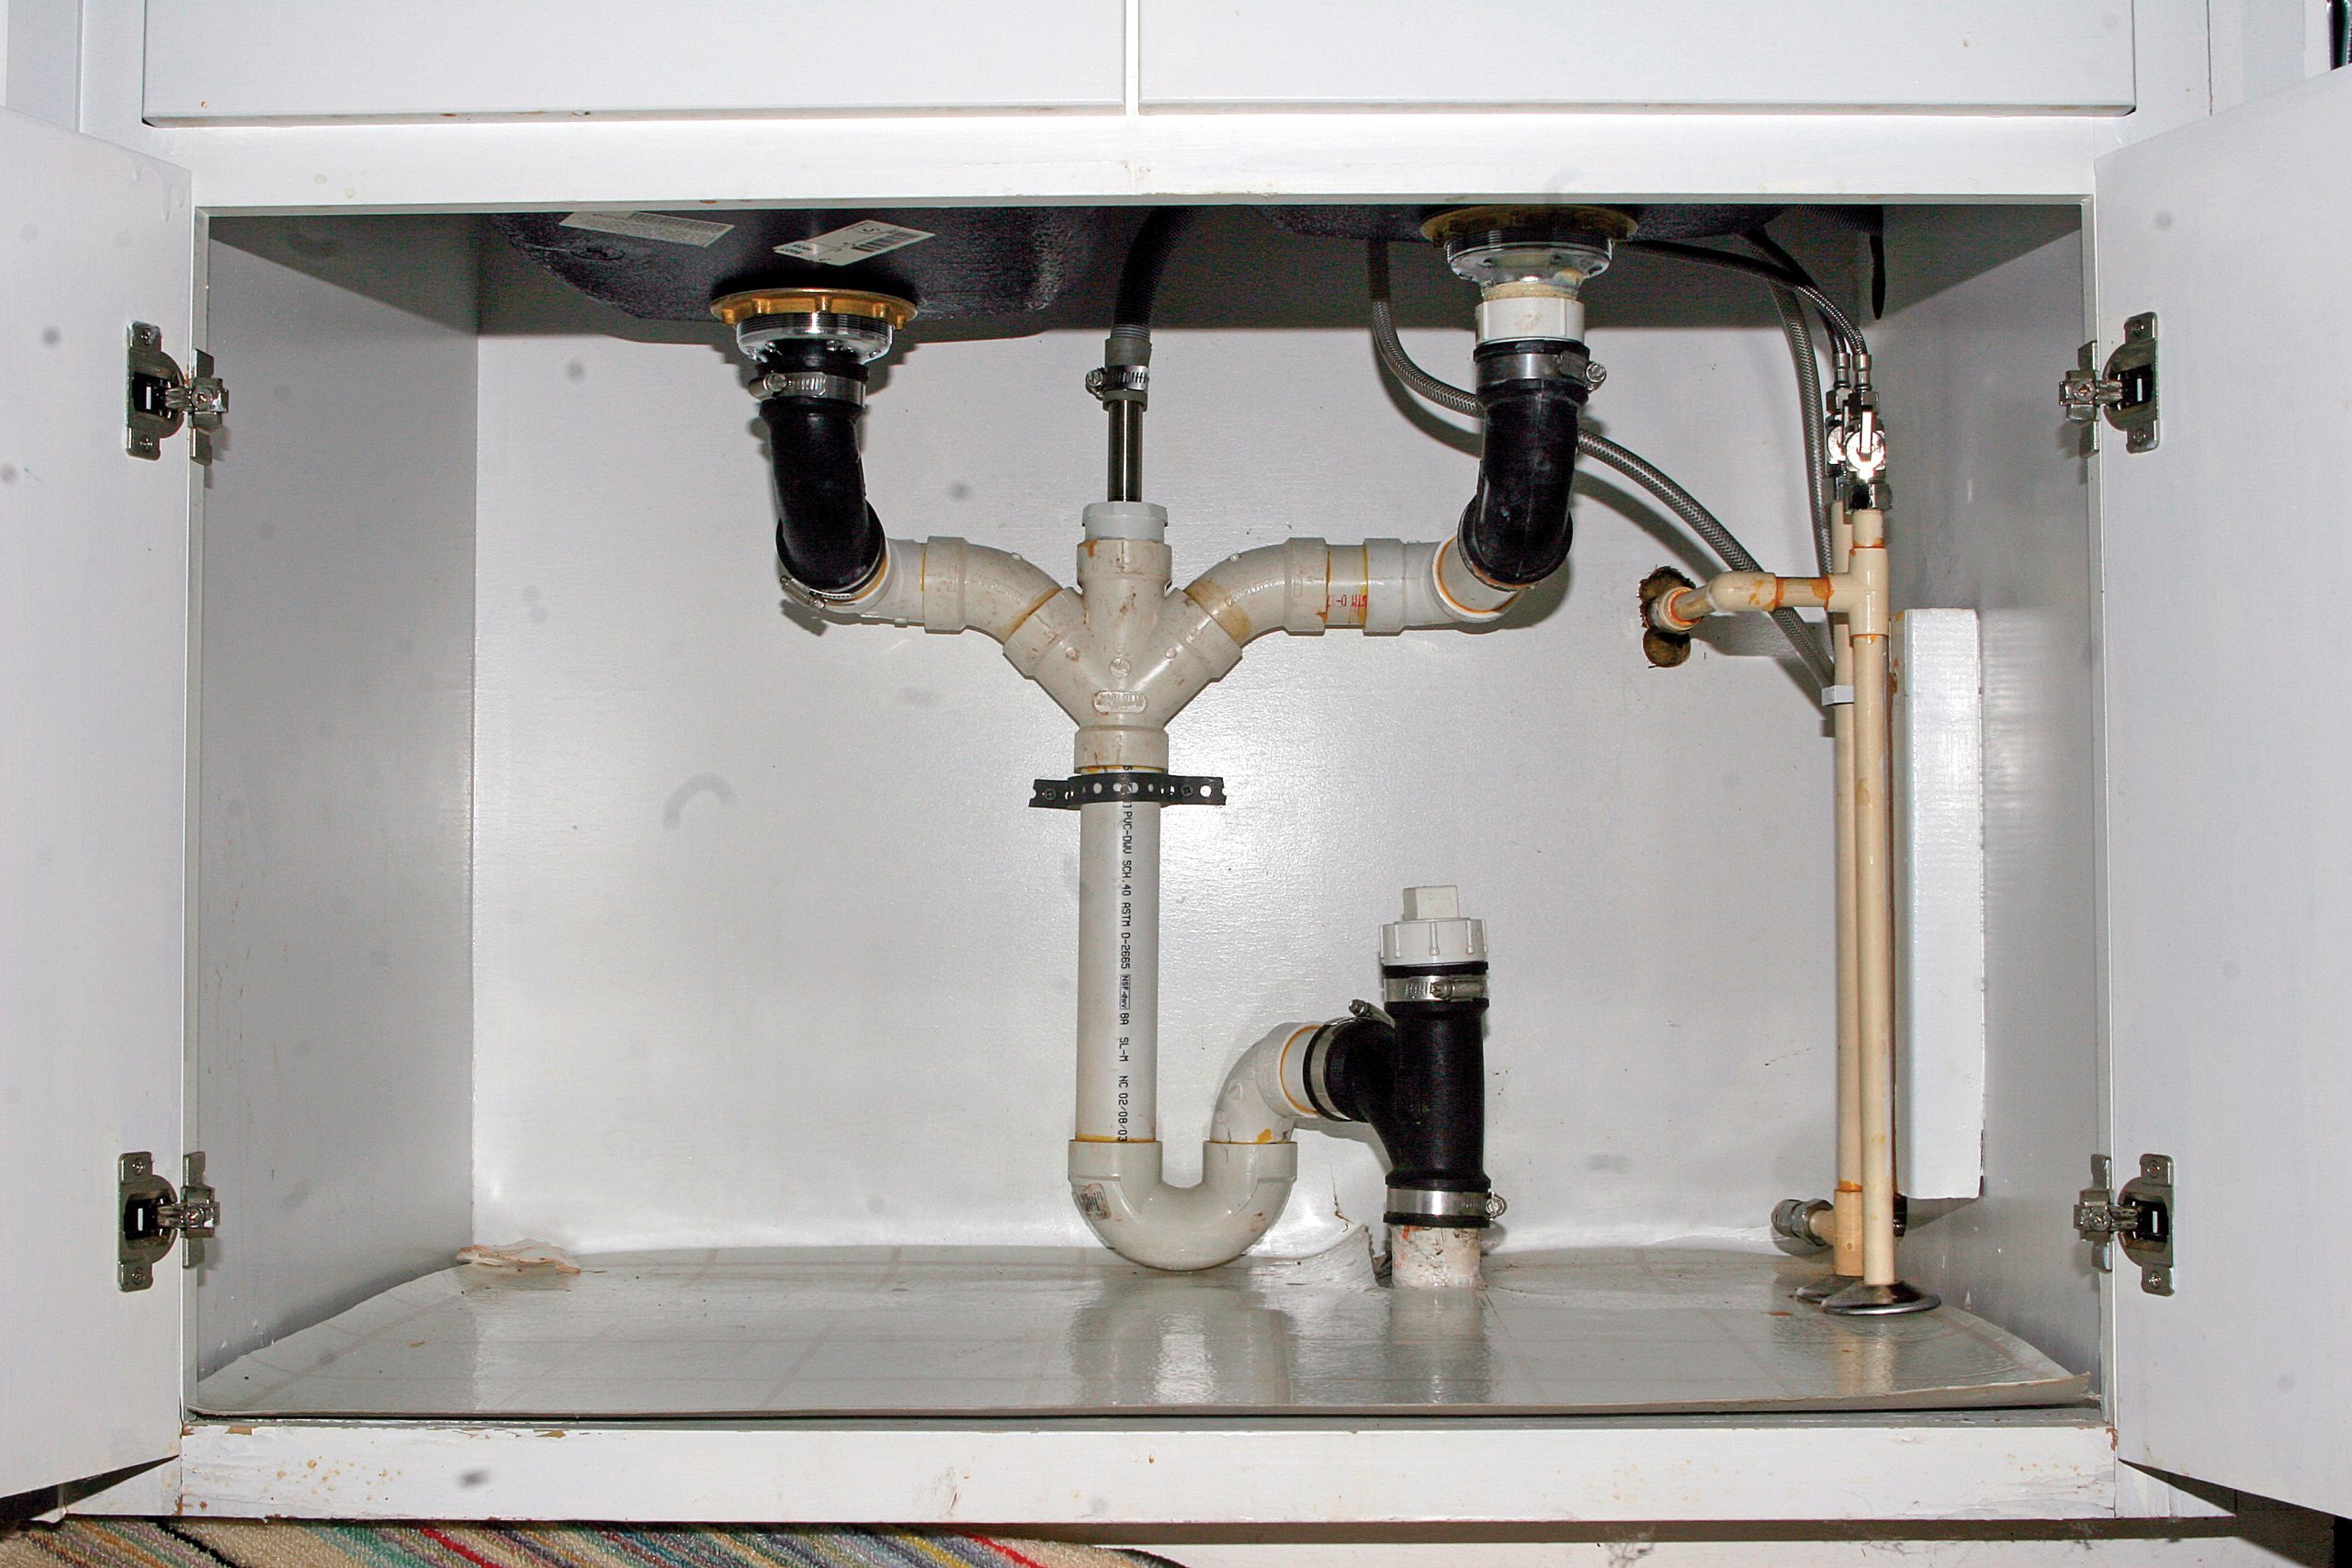 kitchen sink drain installation guide